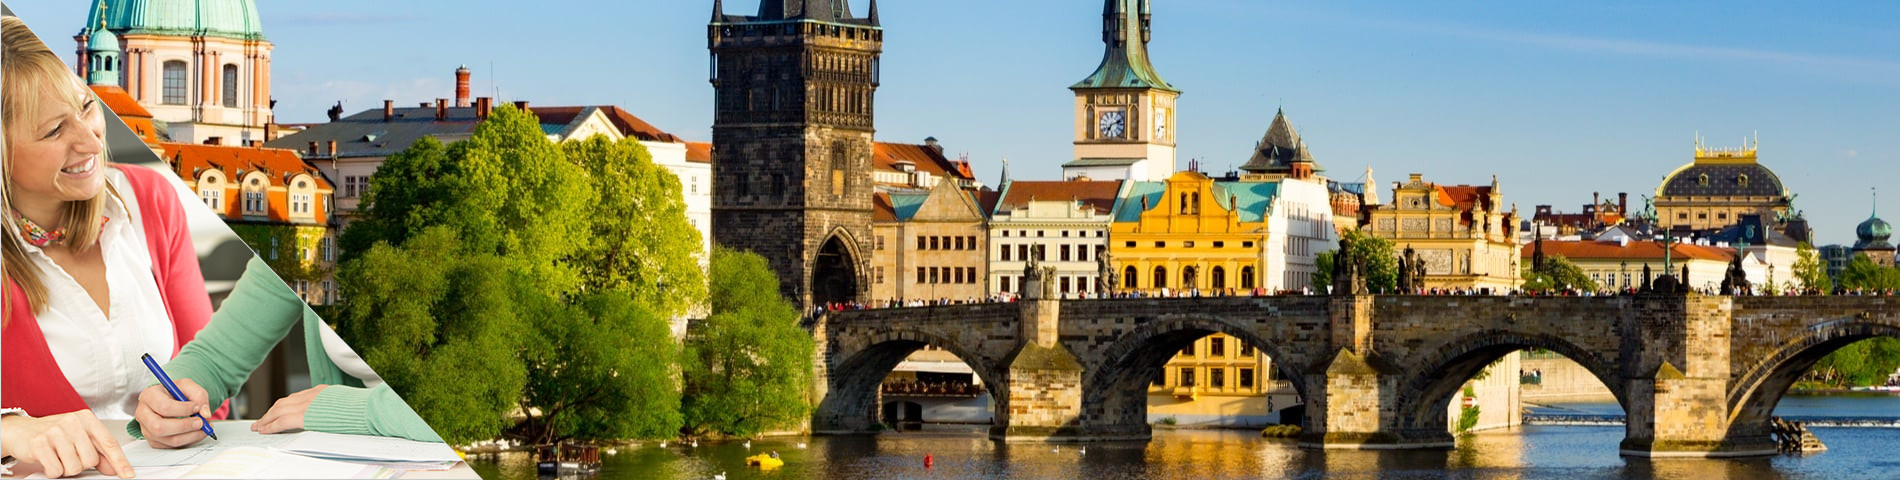 Praga - Estude uma língua & more na casa do seu professor